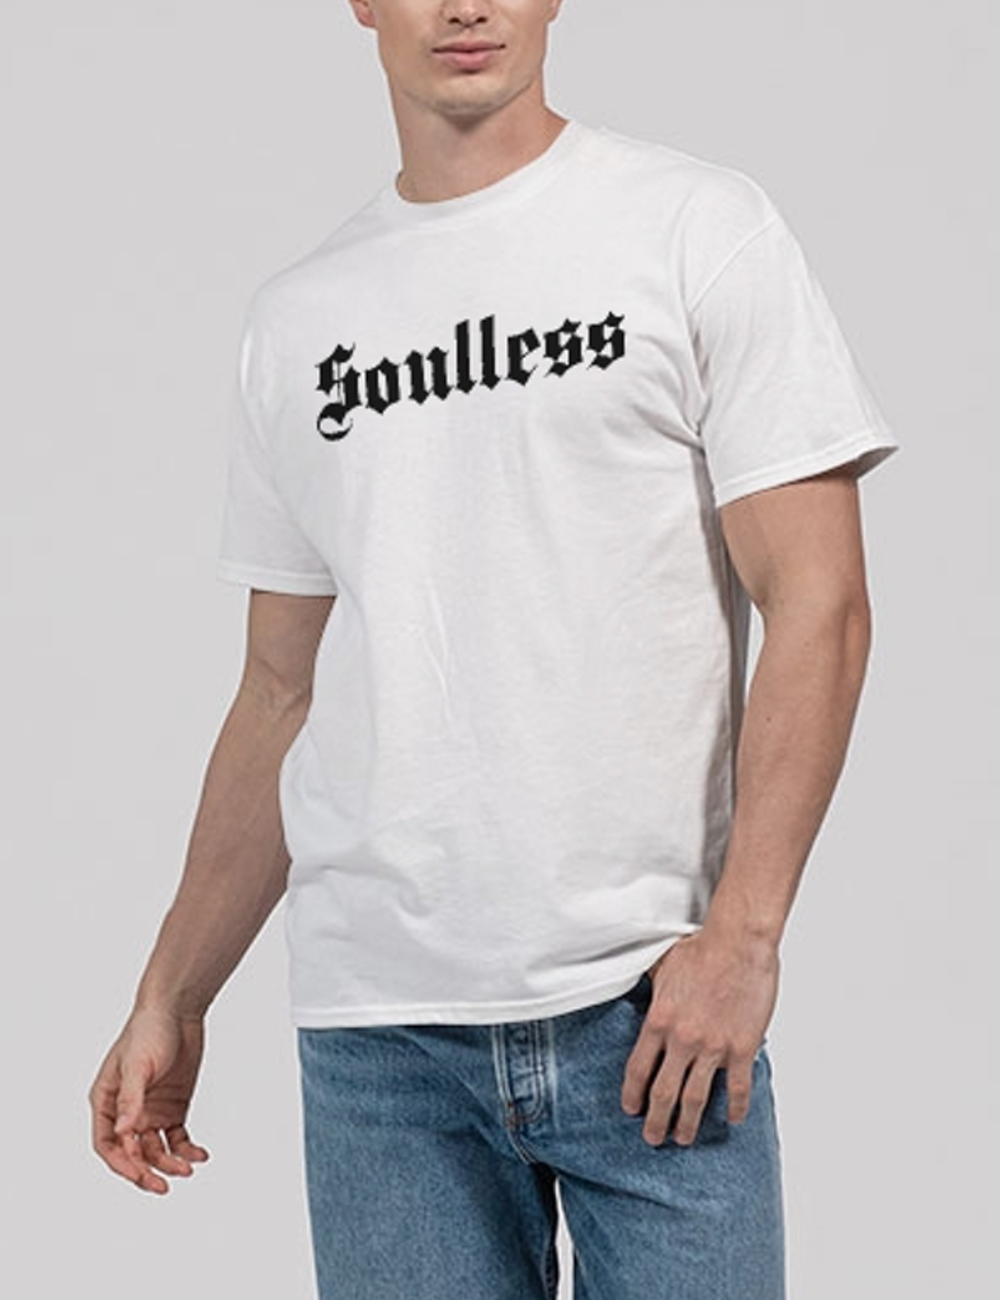 Soulless Men's Classic T-Shirt OniTakai